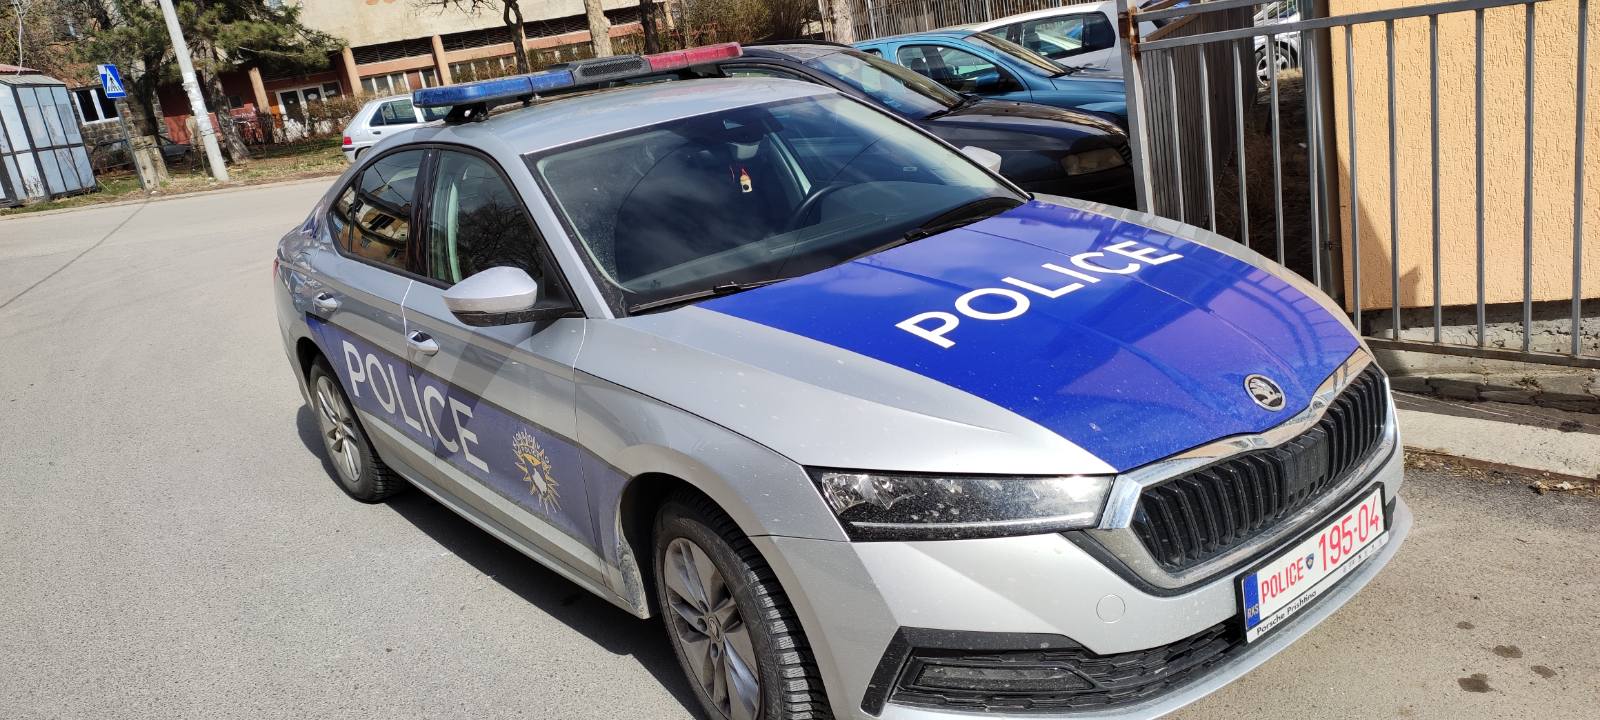 Policija kosovska kp